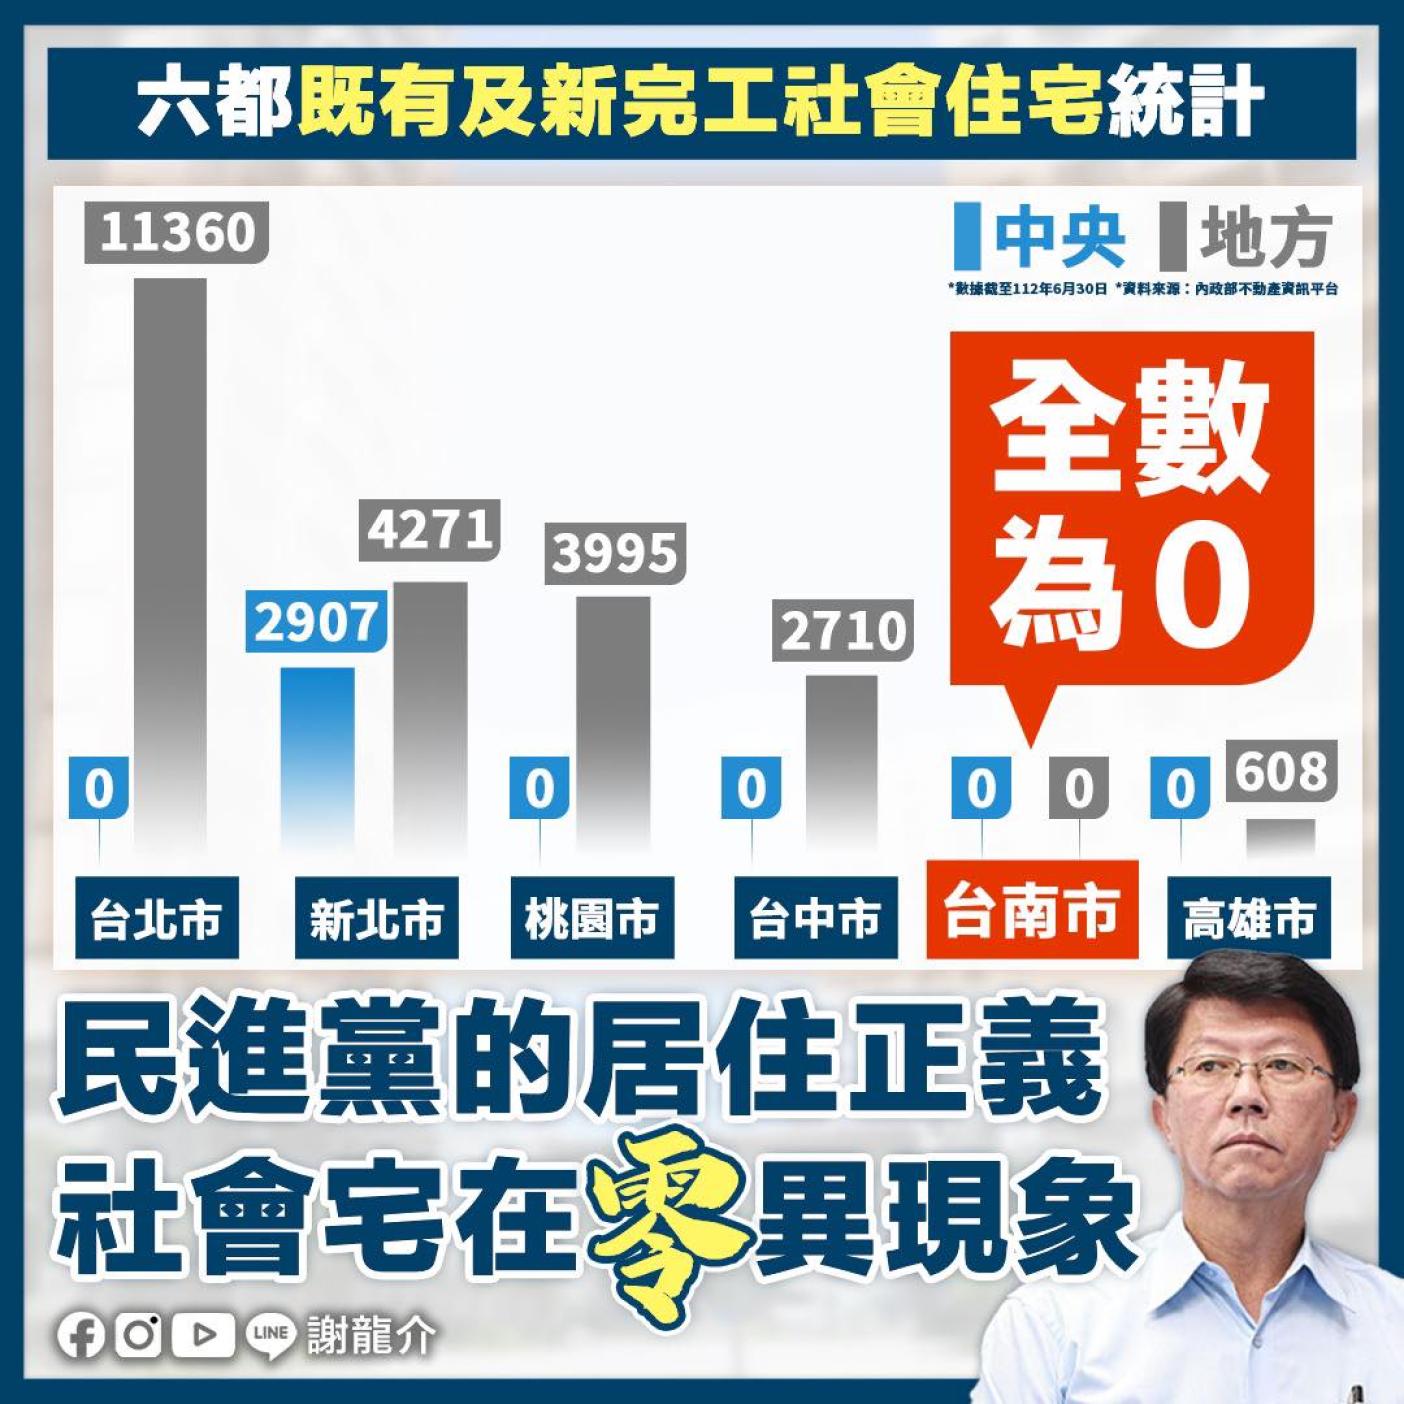 謝龍介在臉書批中央在台南等5個直轄市沒蓋任何一戶社會住宅。翻攝謝龍介臉書